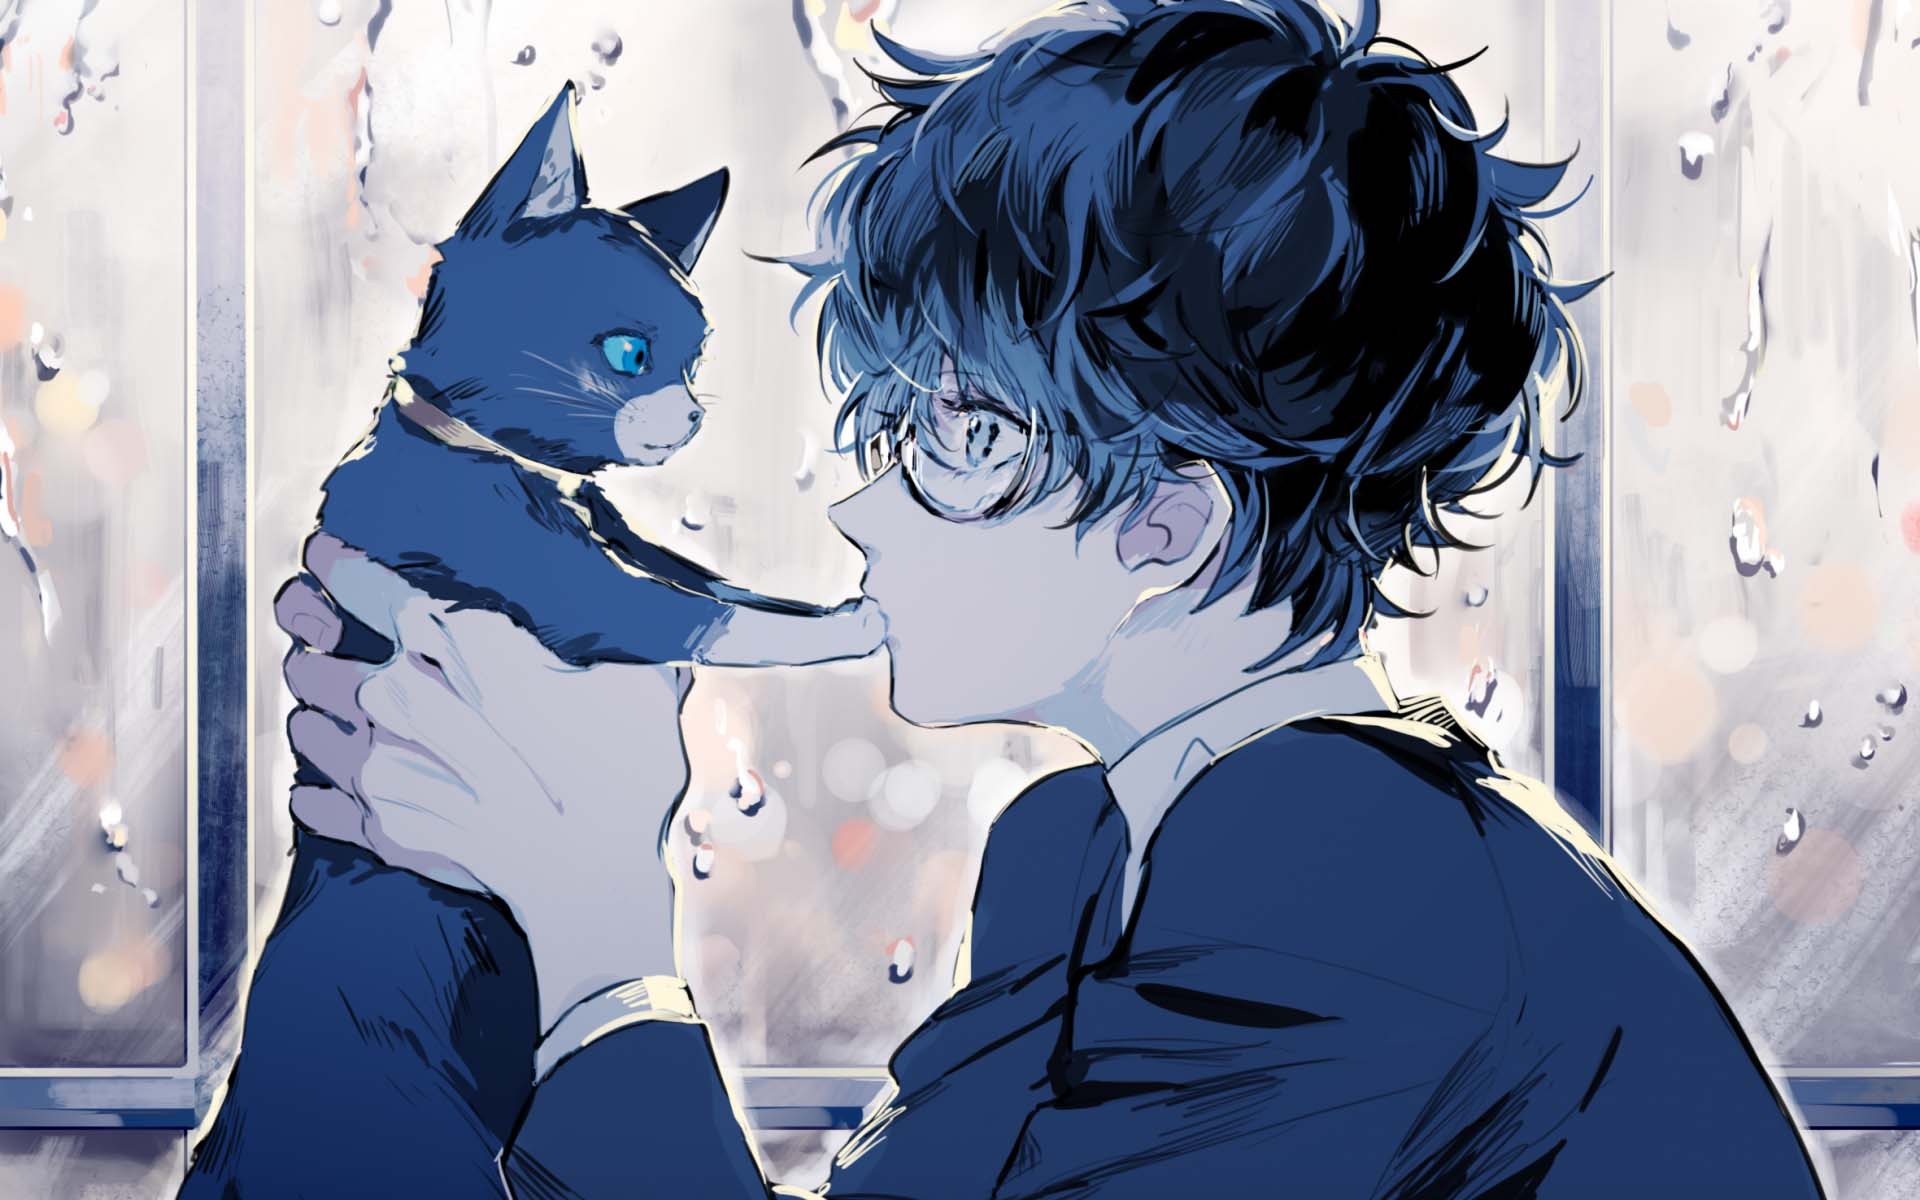 ảnh hoạt hình buồn đẹp nhất chàng trai anime tâm trạng cùng chú mèo cưng